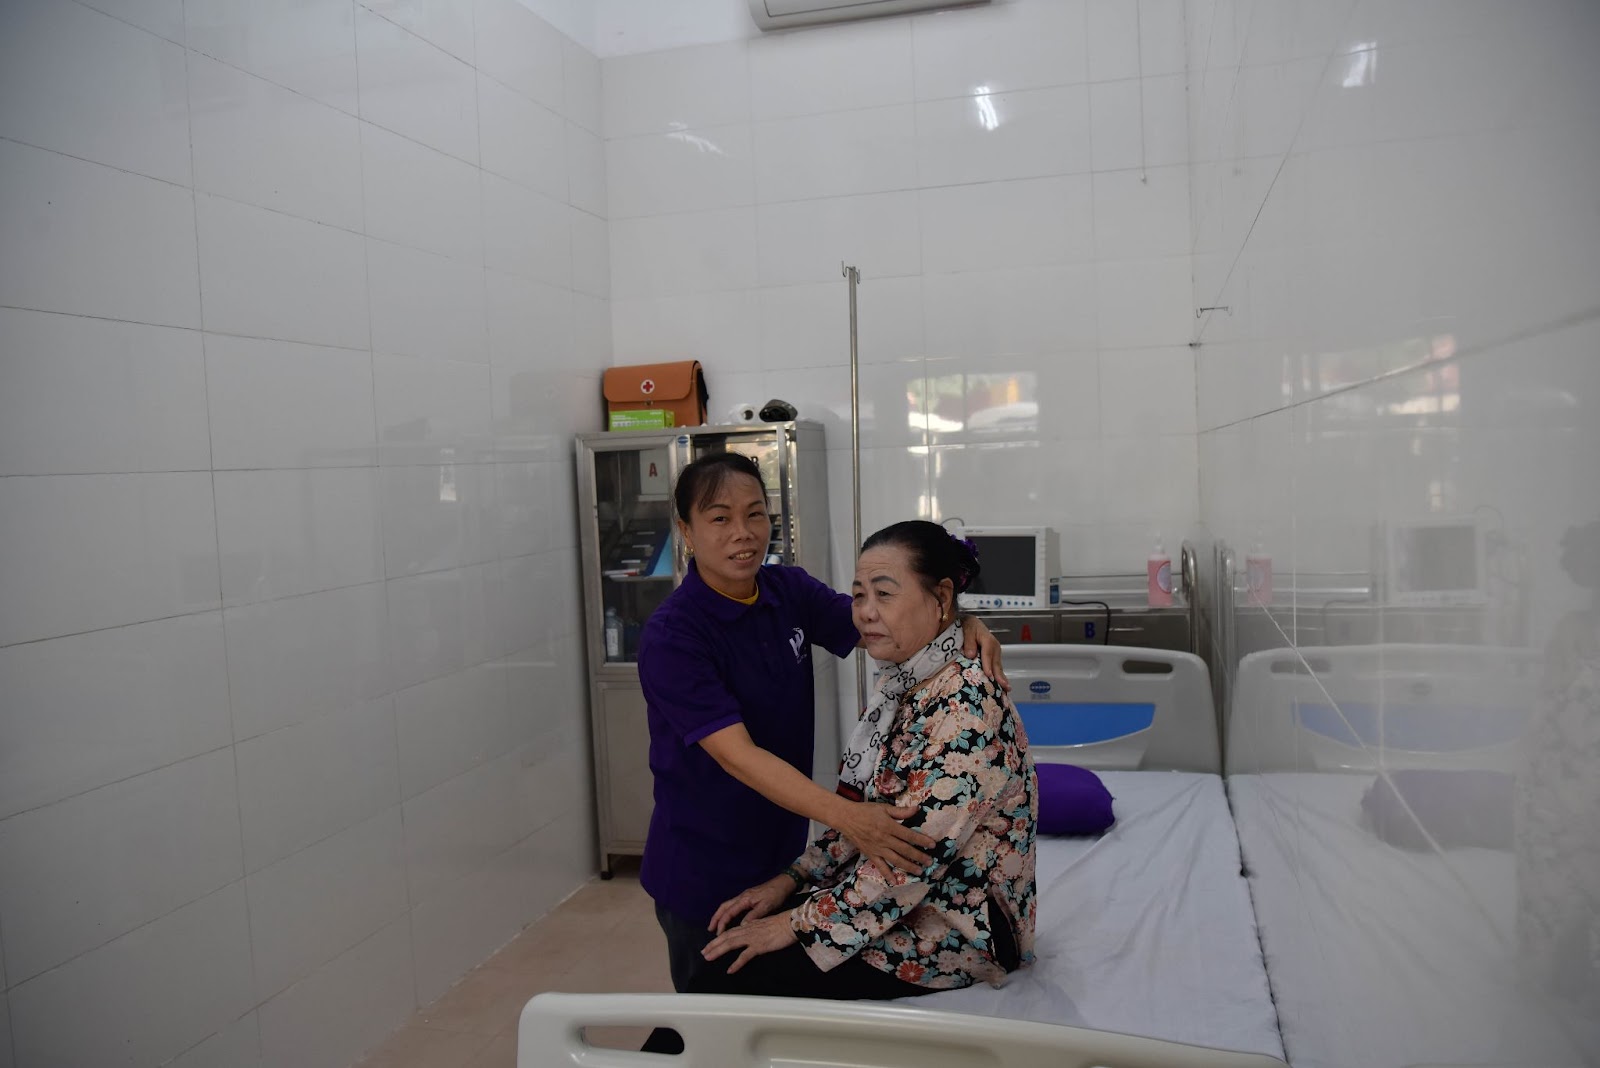 Dịch vụ giúp việc chăm người ốm tận tâm, chuyên nghiệp số 1 Hà Nội | Công  ty giúp việc gia đình, giúp việc trông trẻ, vệ sinh công nghiệp